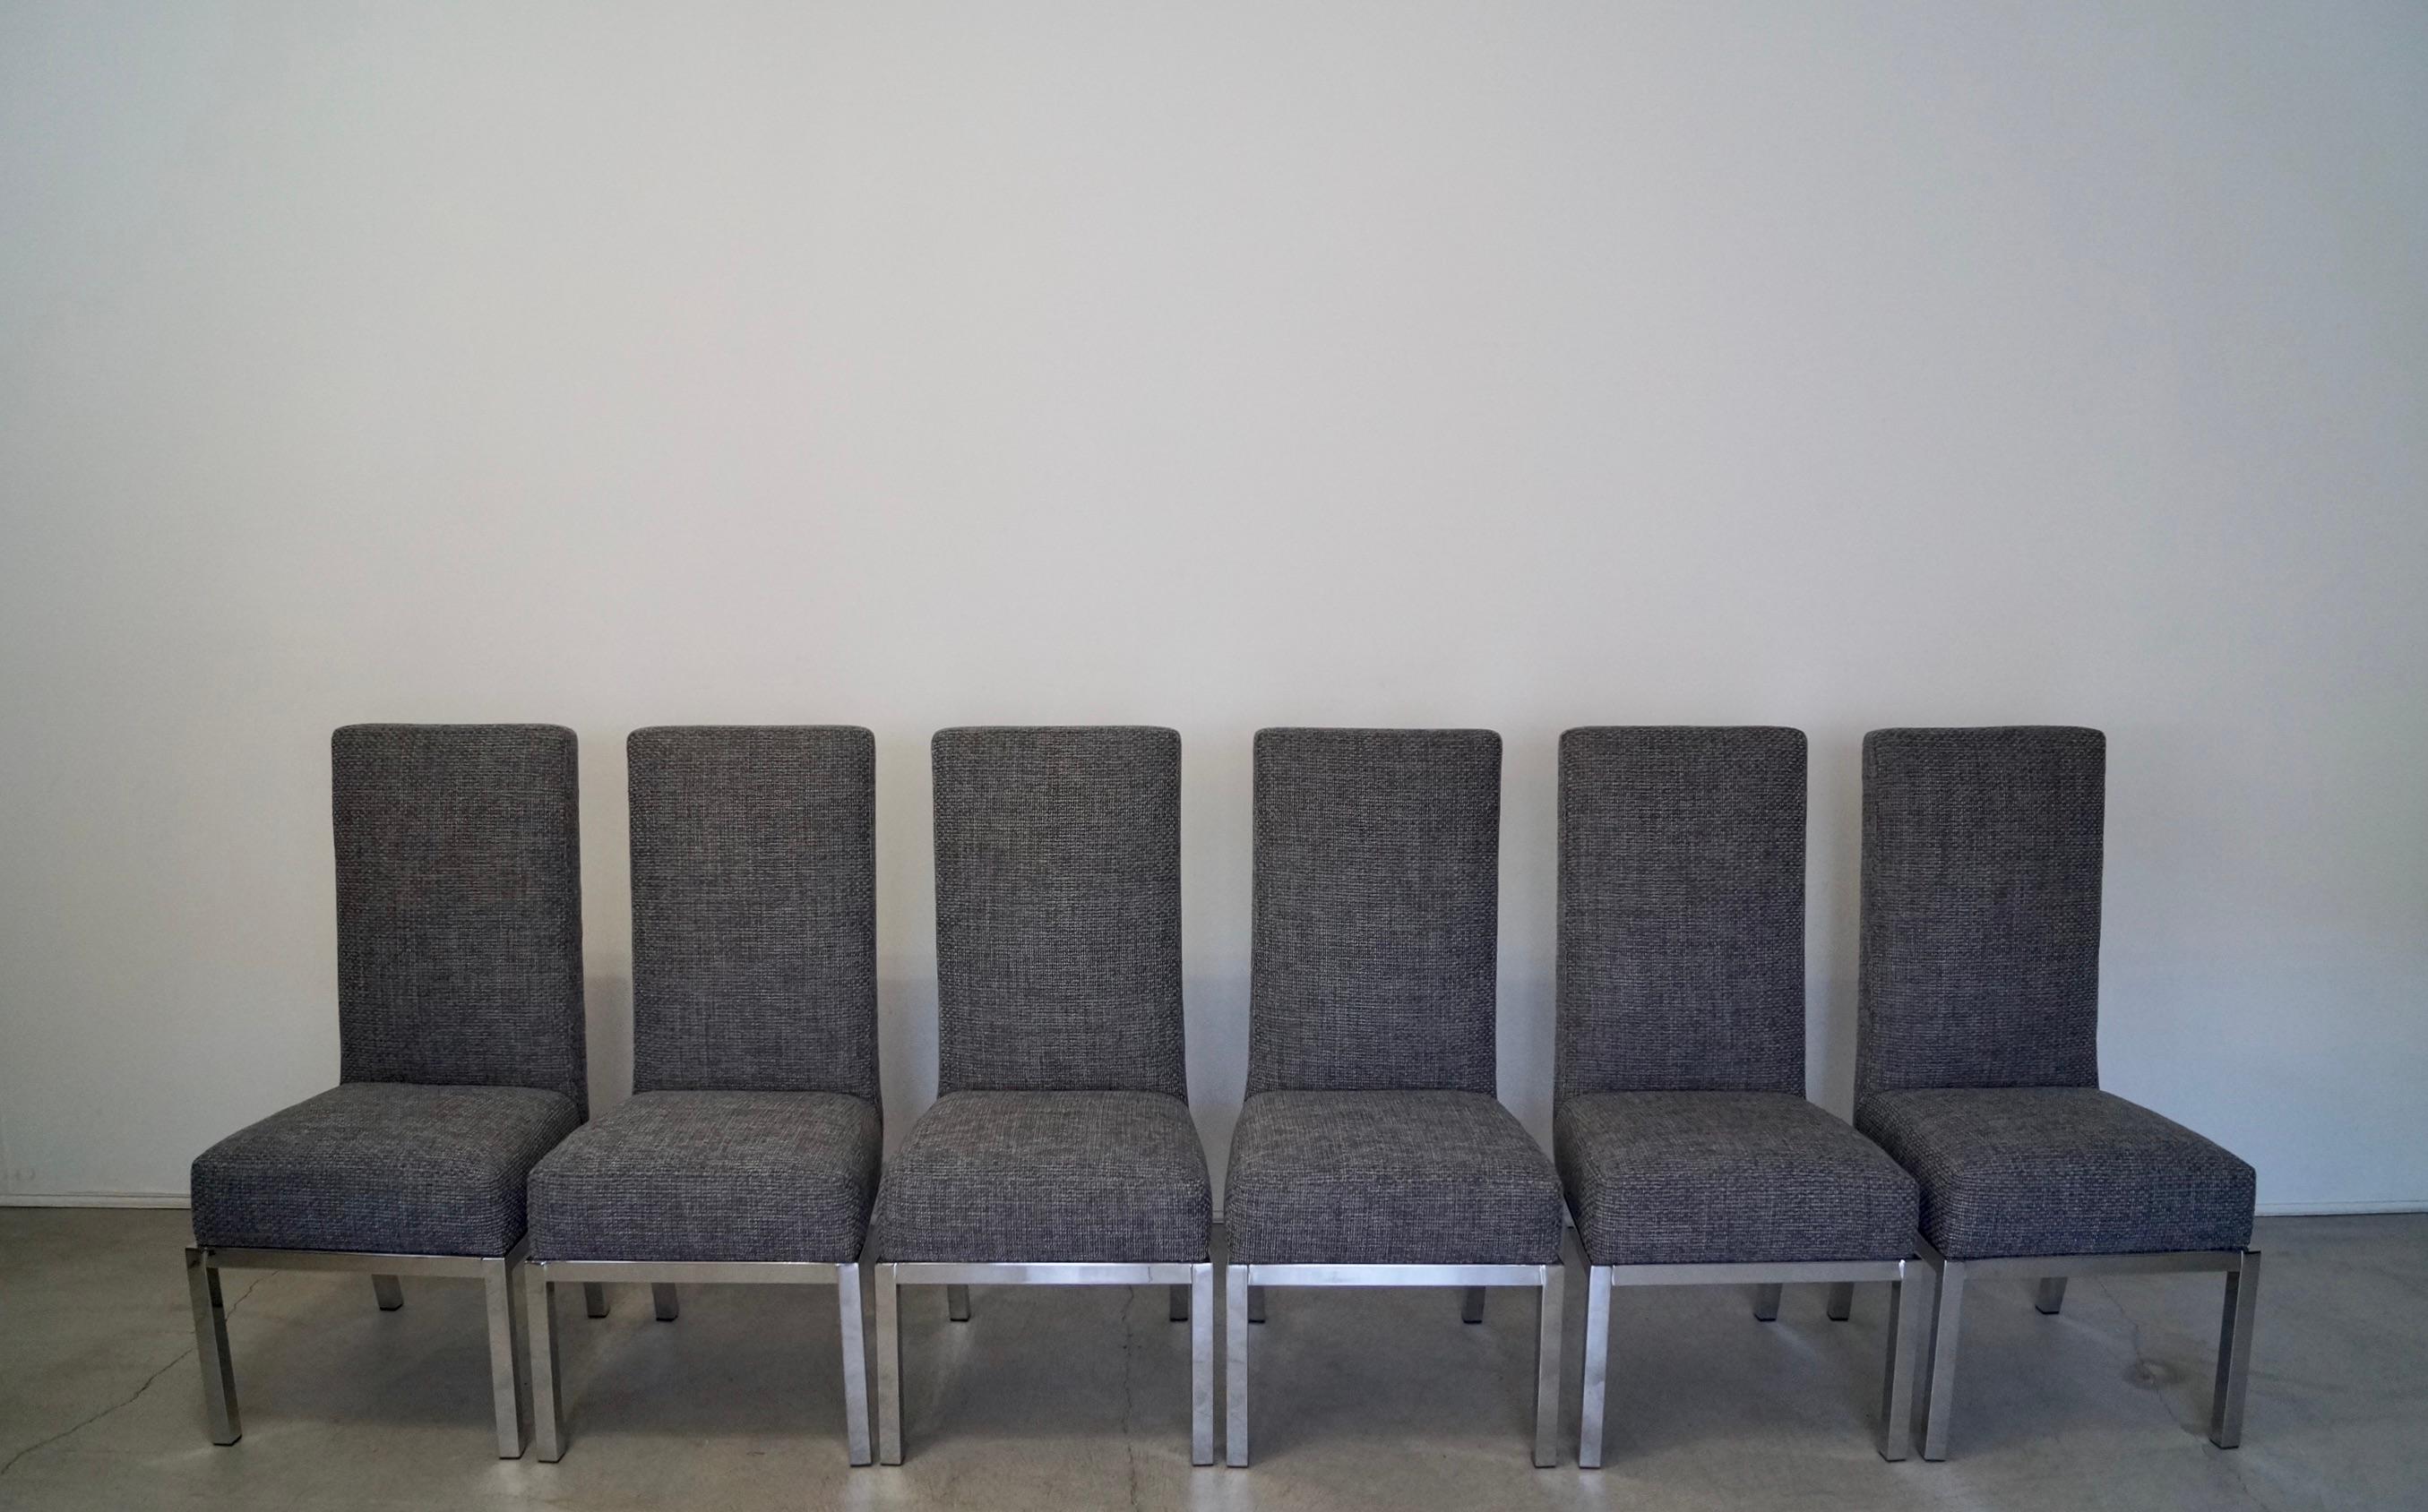 Ensemble de six chaises de salle à manger vintage Mid-century Modern à vendre. Conçues par le célèbre designer Milo Baughman pour le Design Institute of America dans les années 1960, elles ont été restaurées par des professionnels. Les bases